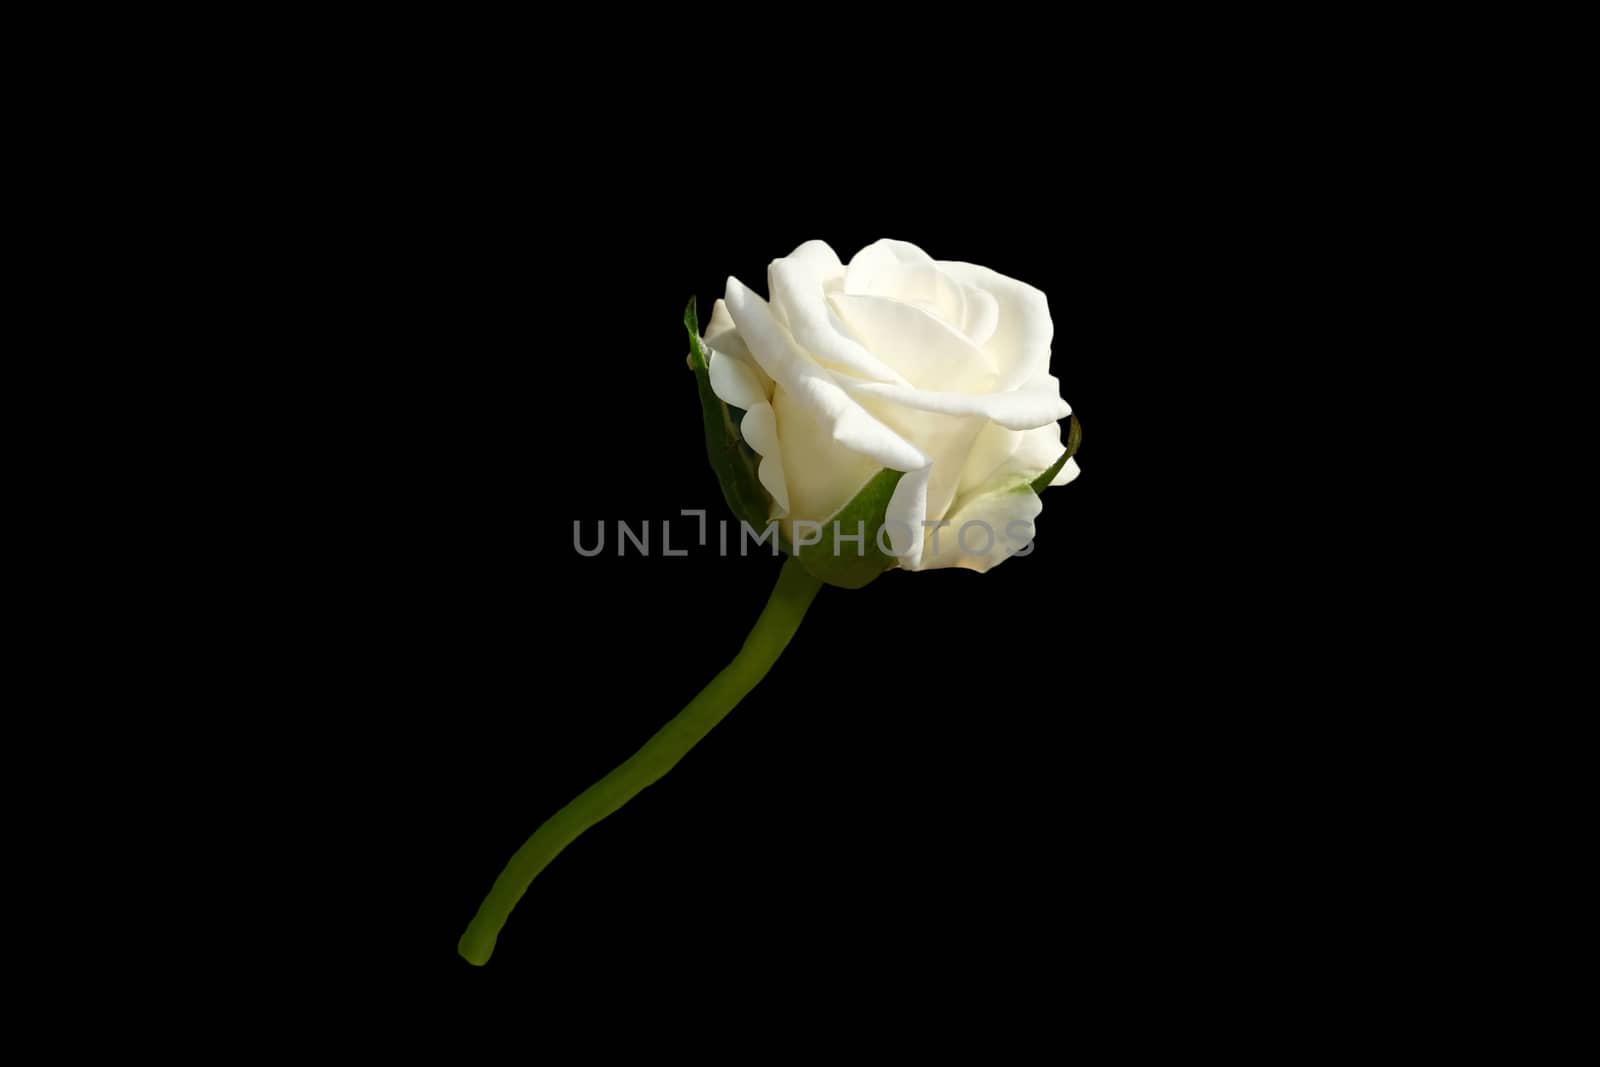 white rose flower isolated on black background. Image photo